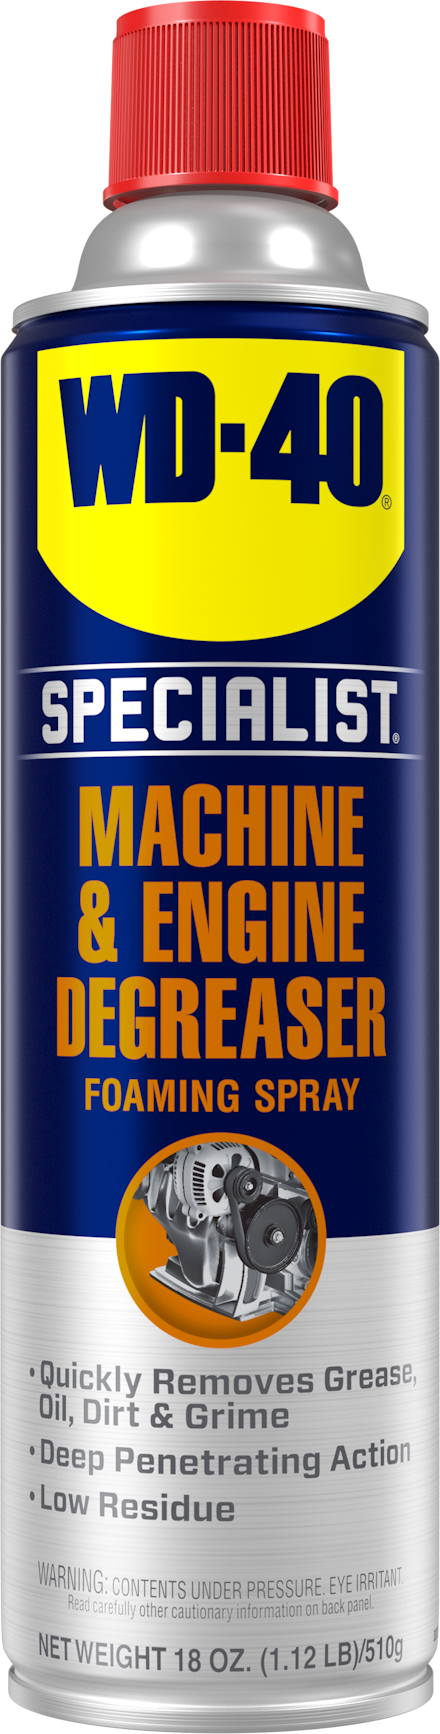 Machine & Engine Degreaser Spray